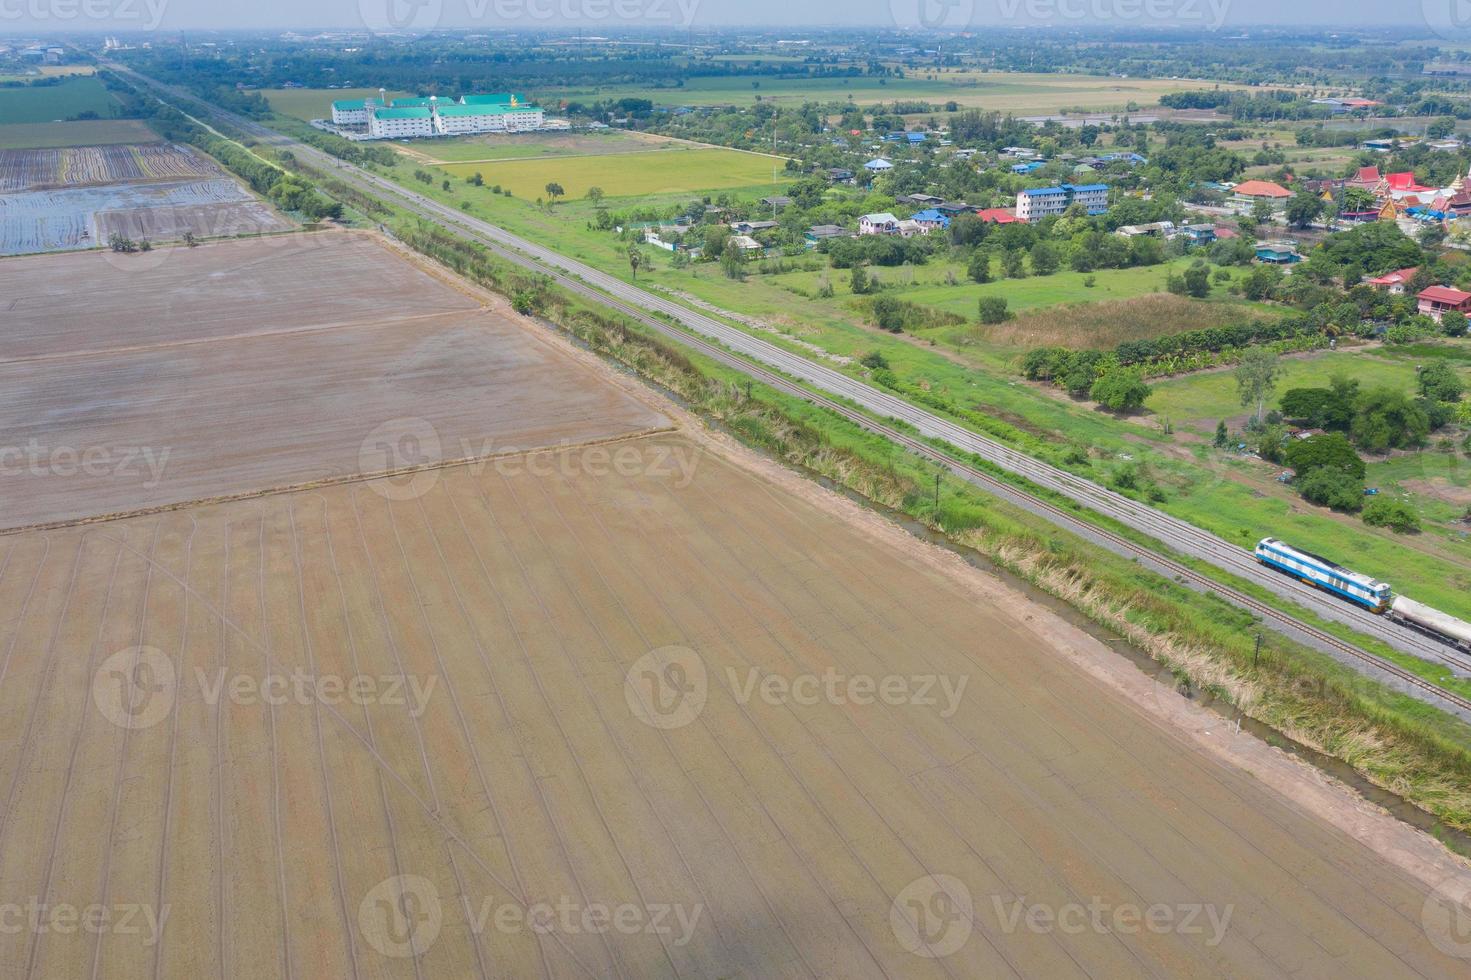 veld rijst met landschap groen patroon natuur achtergrond foto